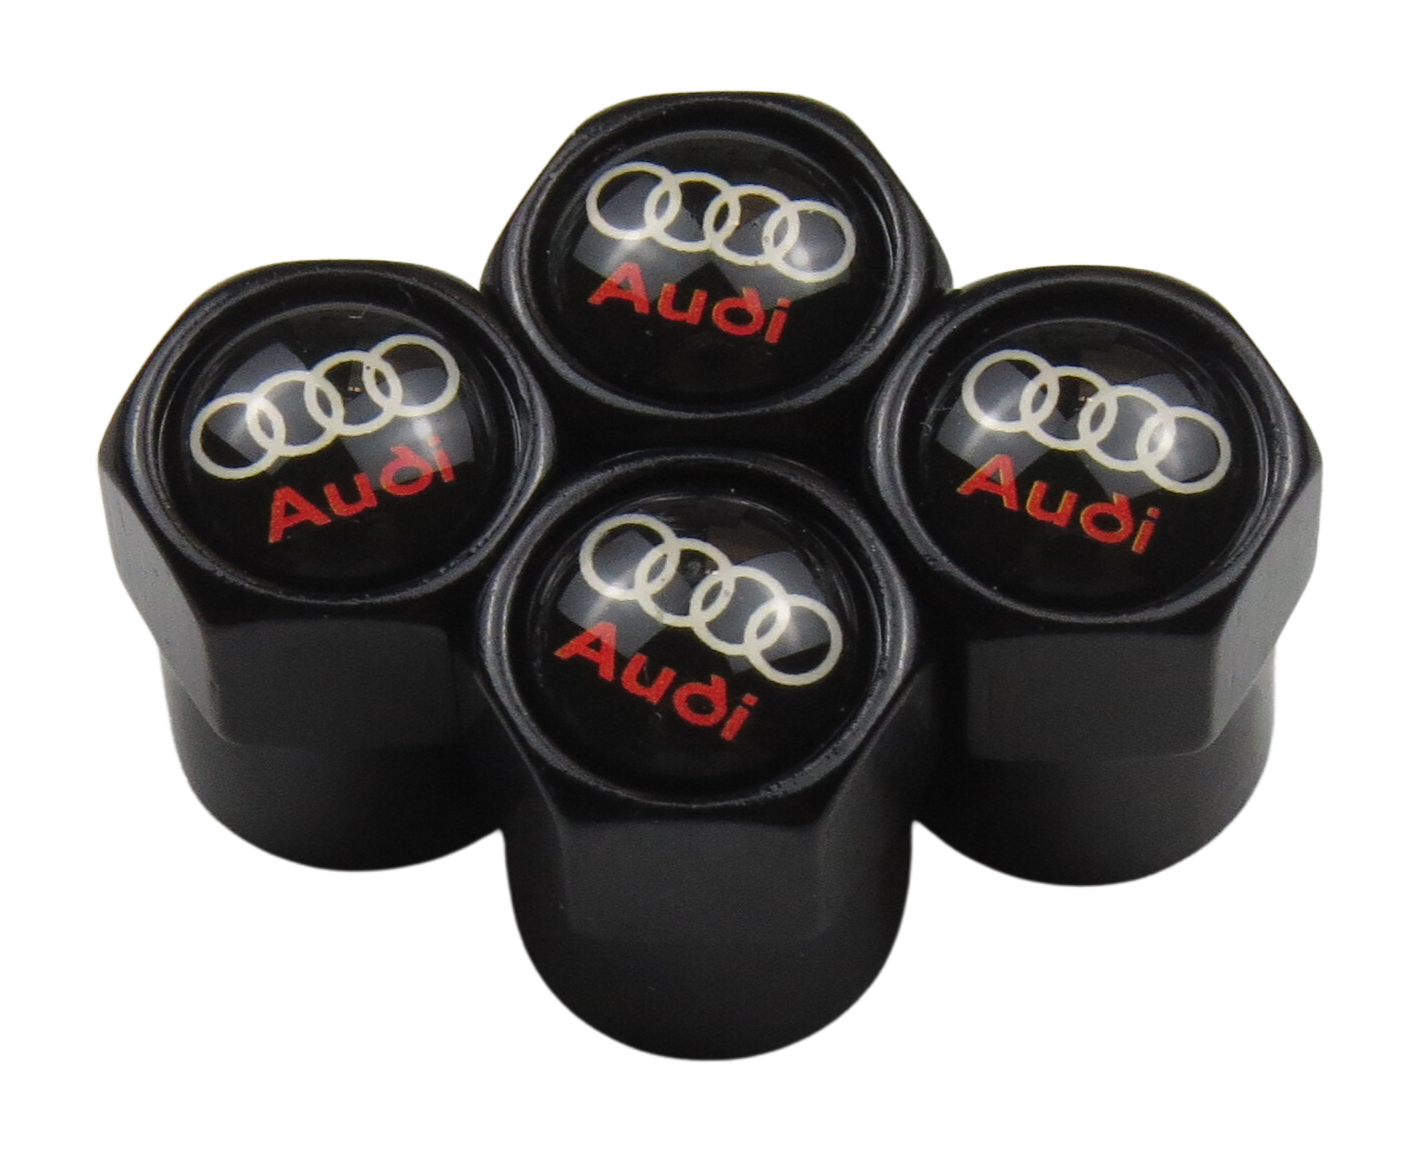 Audi Valve Caps Logo & Name - Black – My Car Hobby Shop